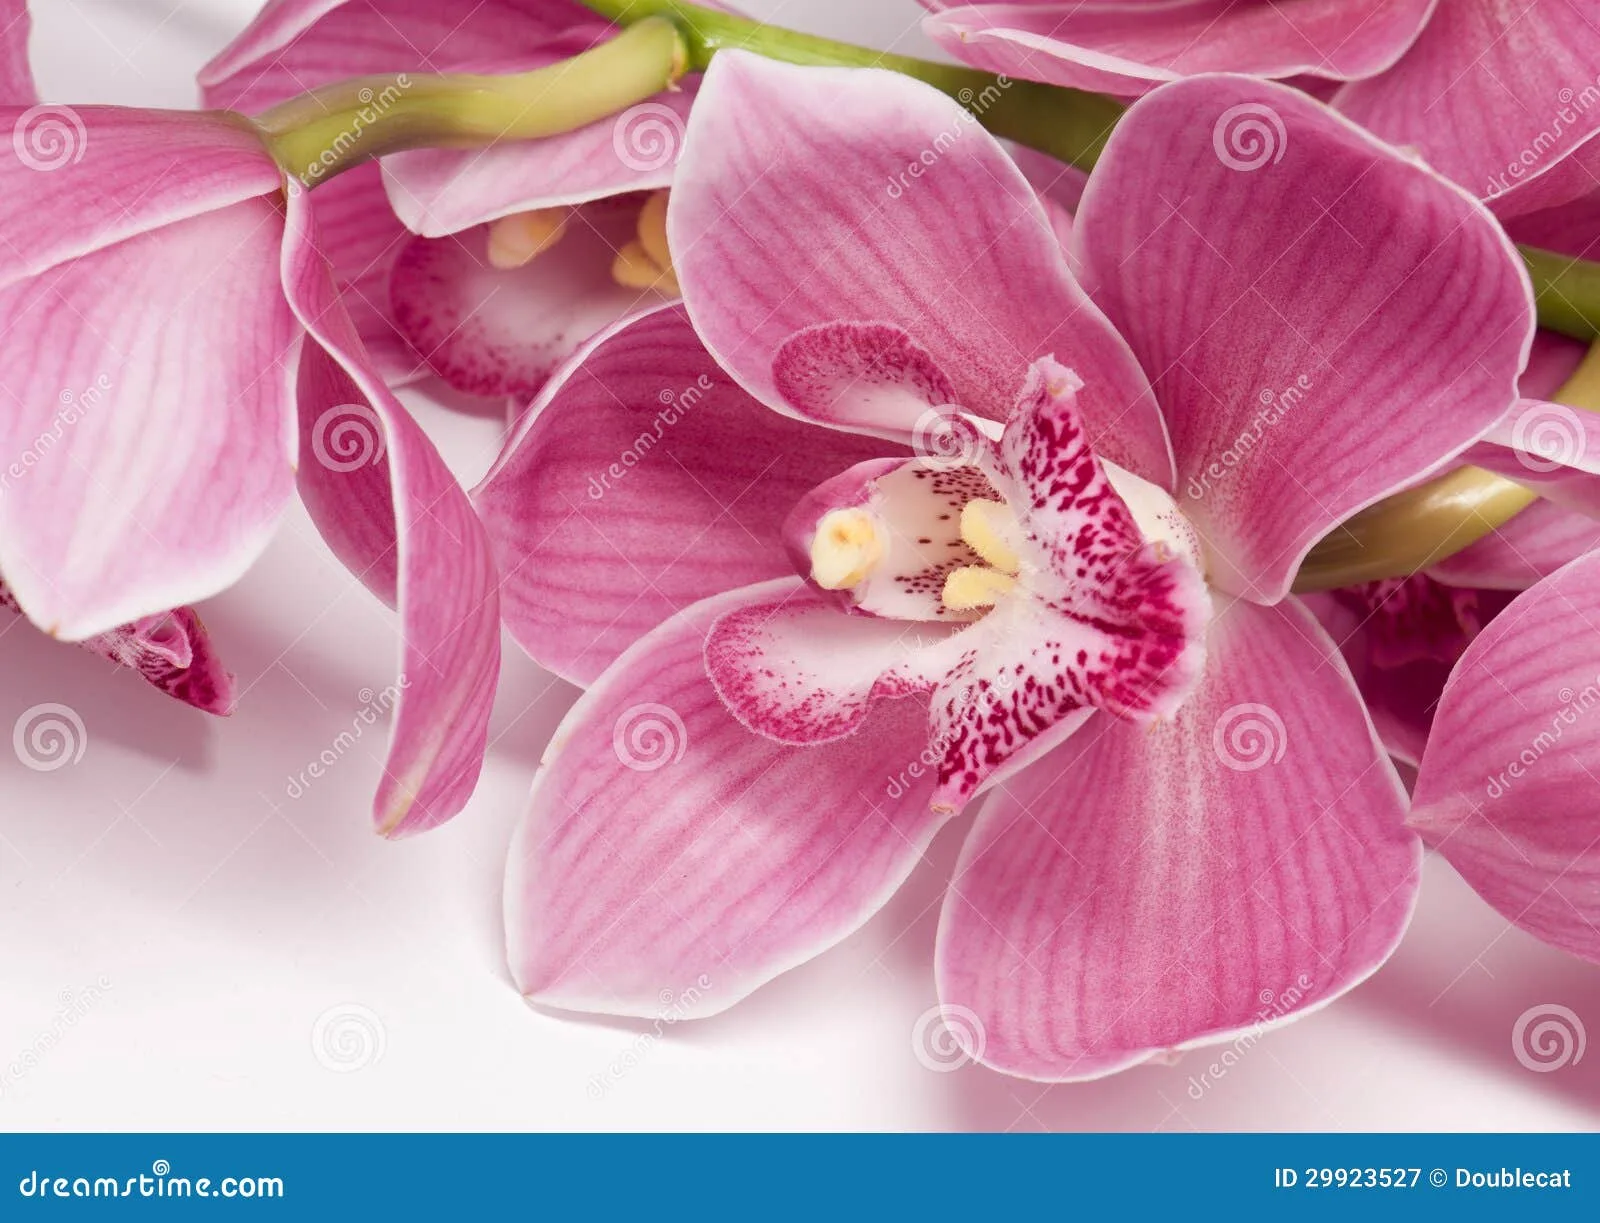 Фото Стихи к подарку орхидея #88